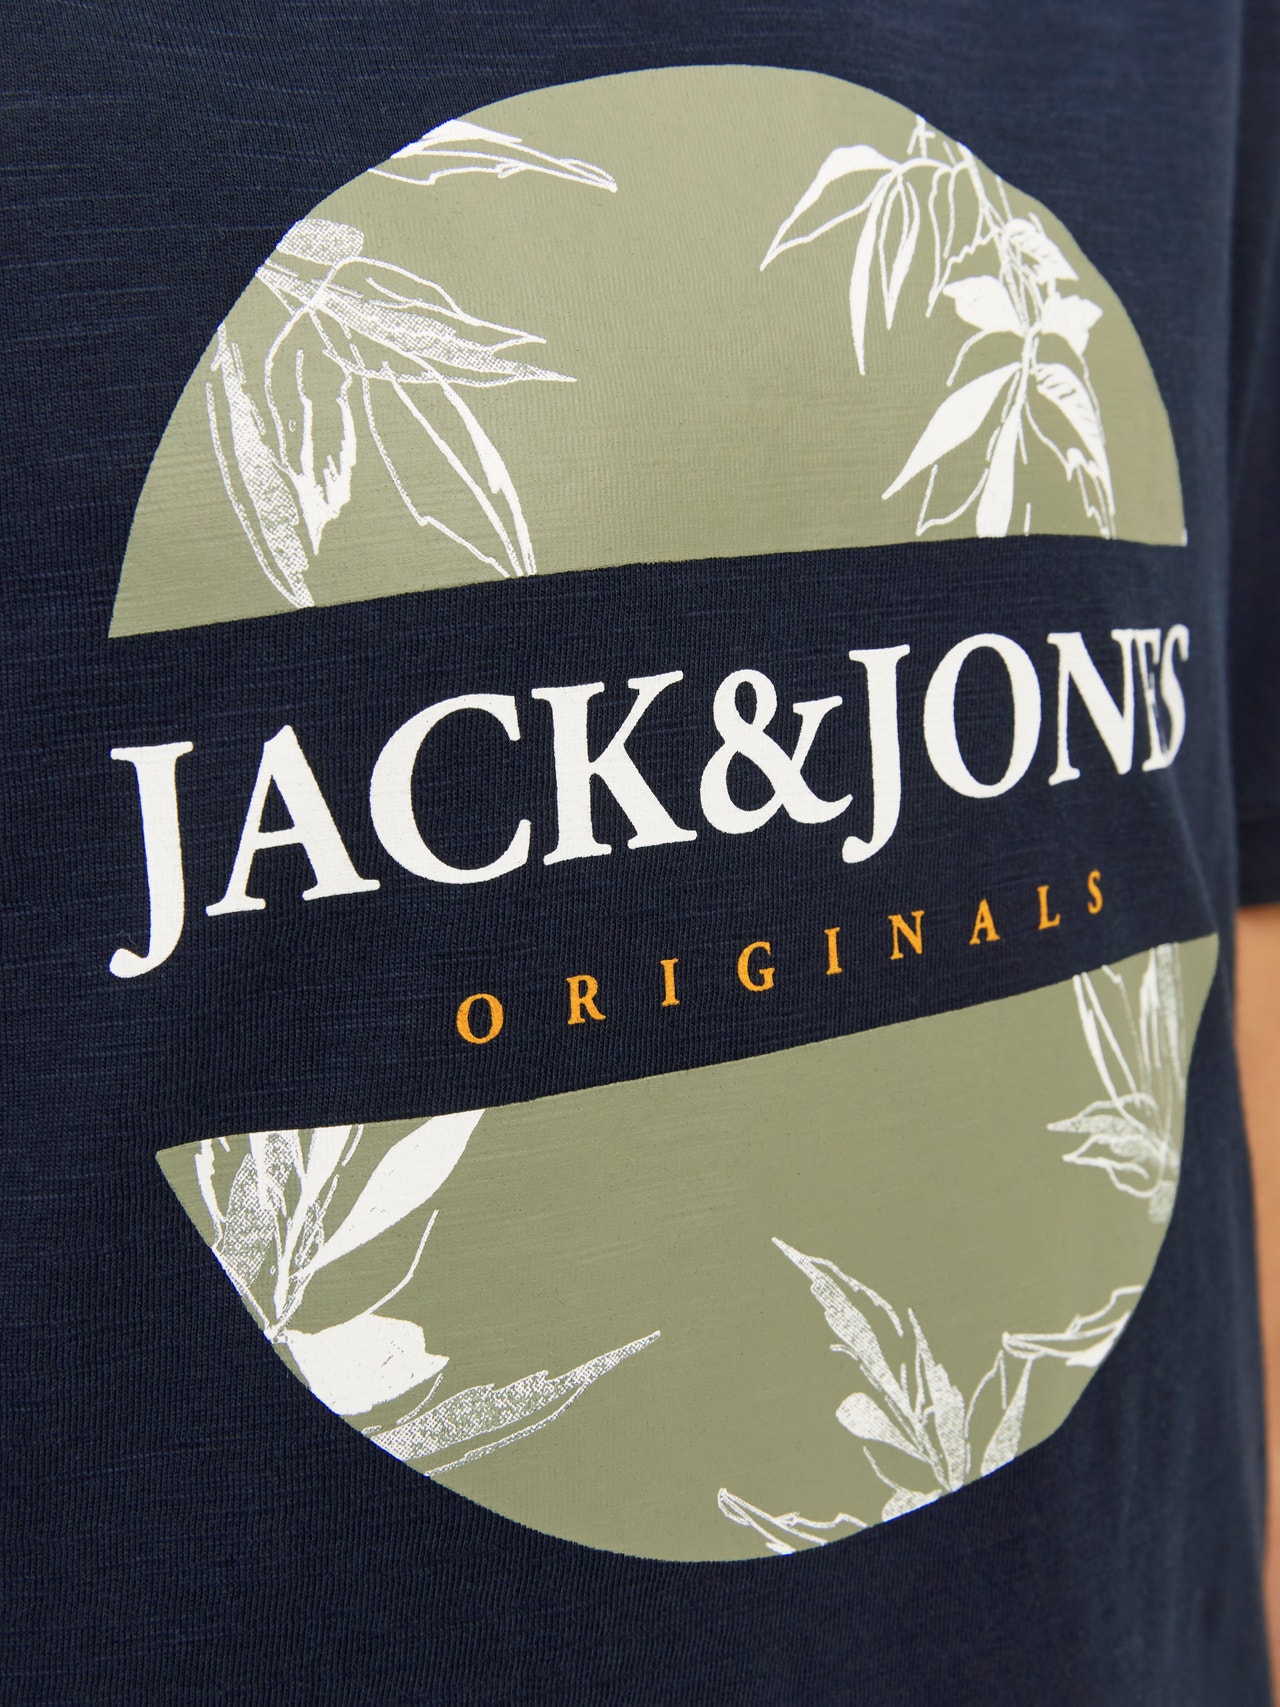 Jack & Jones Trykk T-skjorte For gutter -Navy Blazer - 12258234